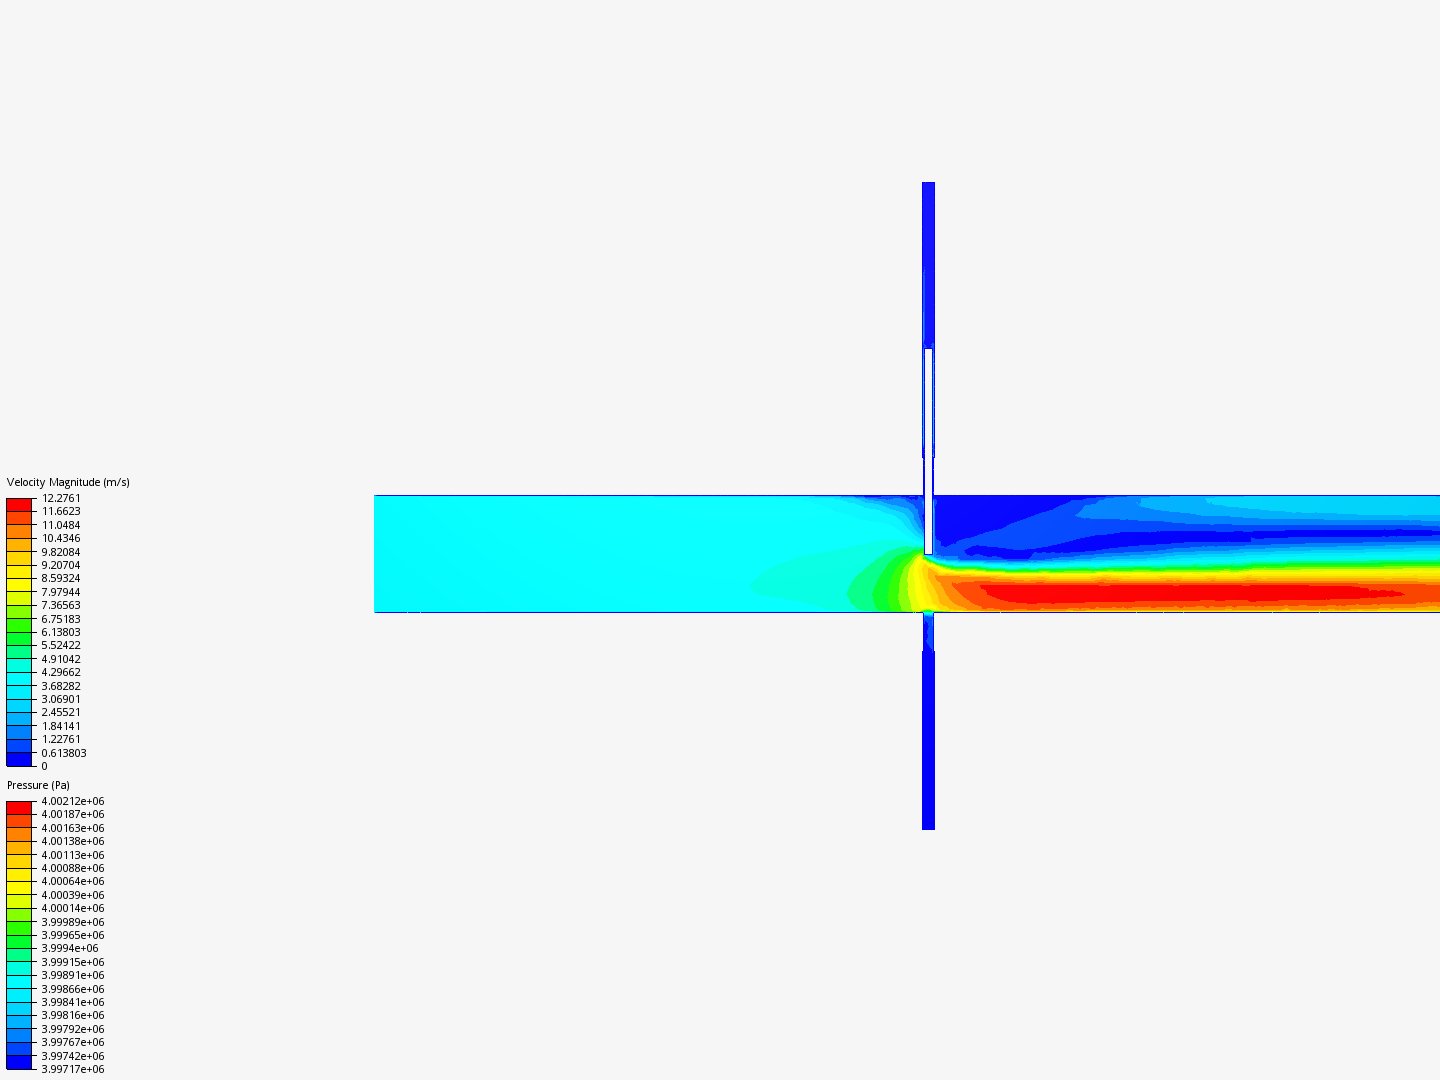 Izomax blade - 50 procent open - isometric image